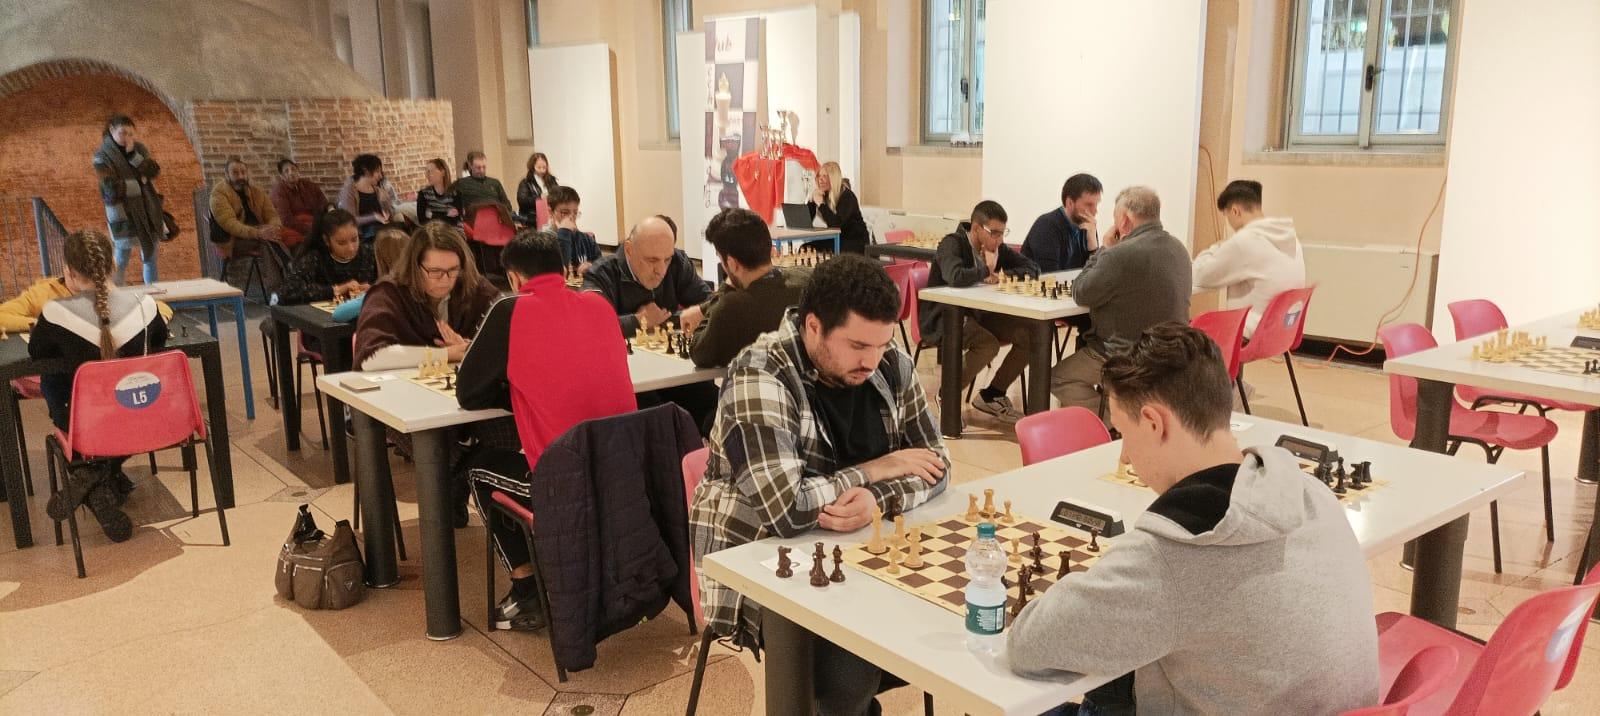 Rovellasca, domenica il torneo scacchistico “4 province”: le info